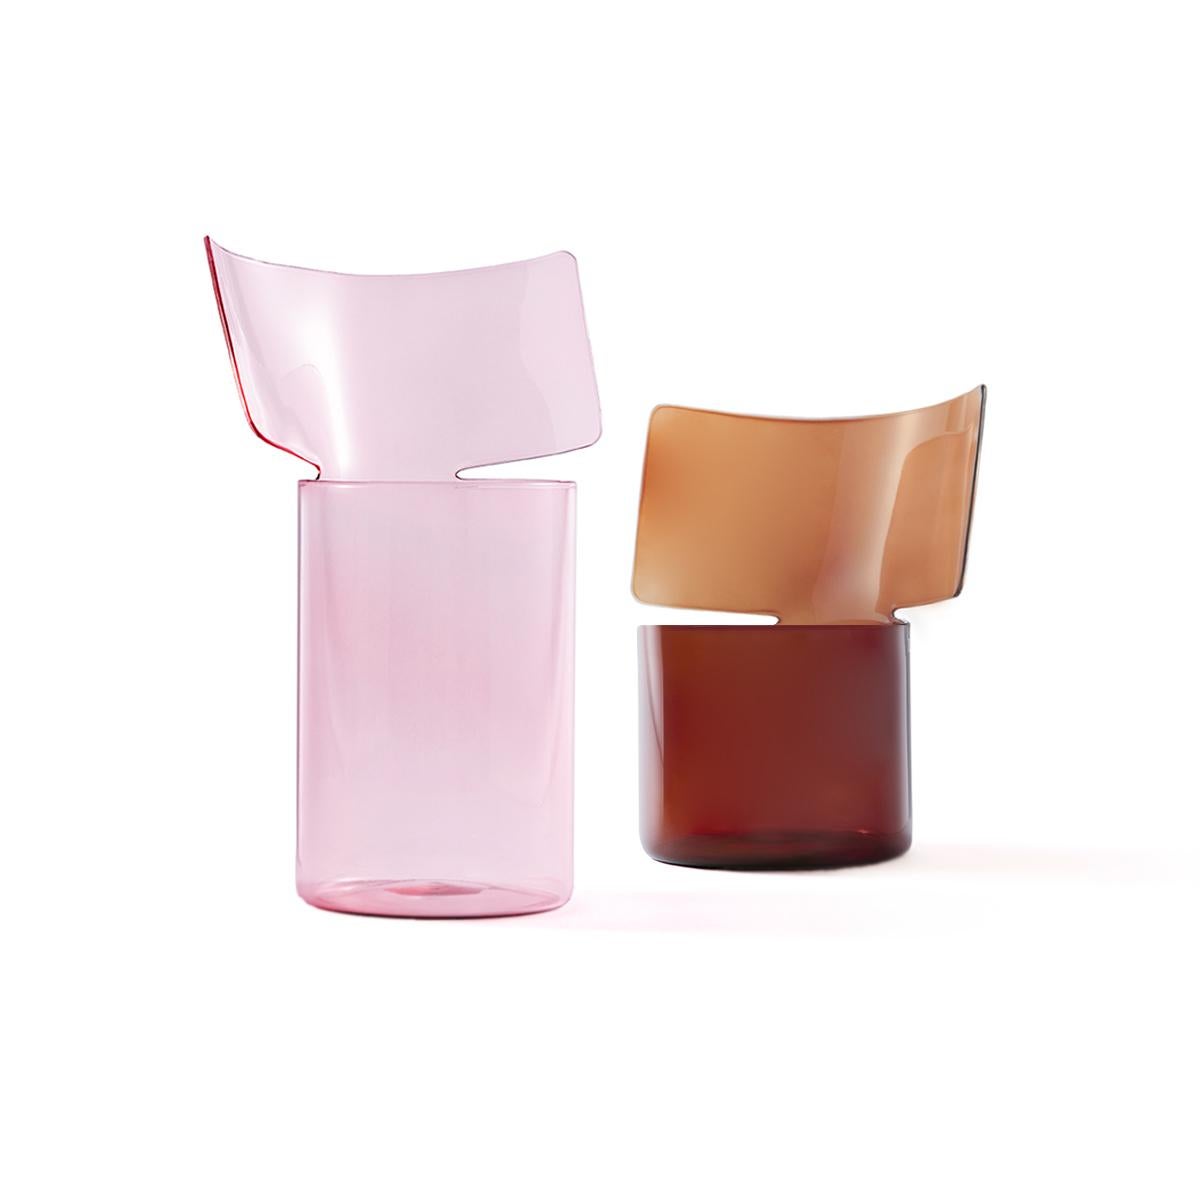 Riflessi ist ein Projekt von Böjte - Bottari für Paola C. aus dem Jahr 2017.
Diese Vase aus mundgeblasenem, bernsteinfarbenem Borosilikatglas ist für alle Arten von Blumen geeignet. Die Kollektion umfasst zwei Formate (niedrig oder hoch) und drei